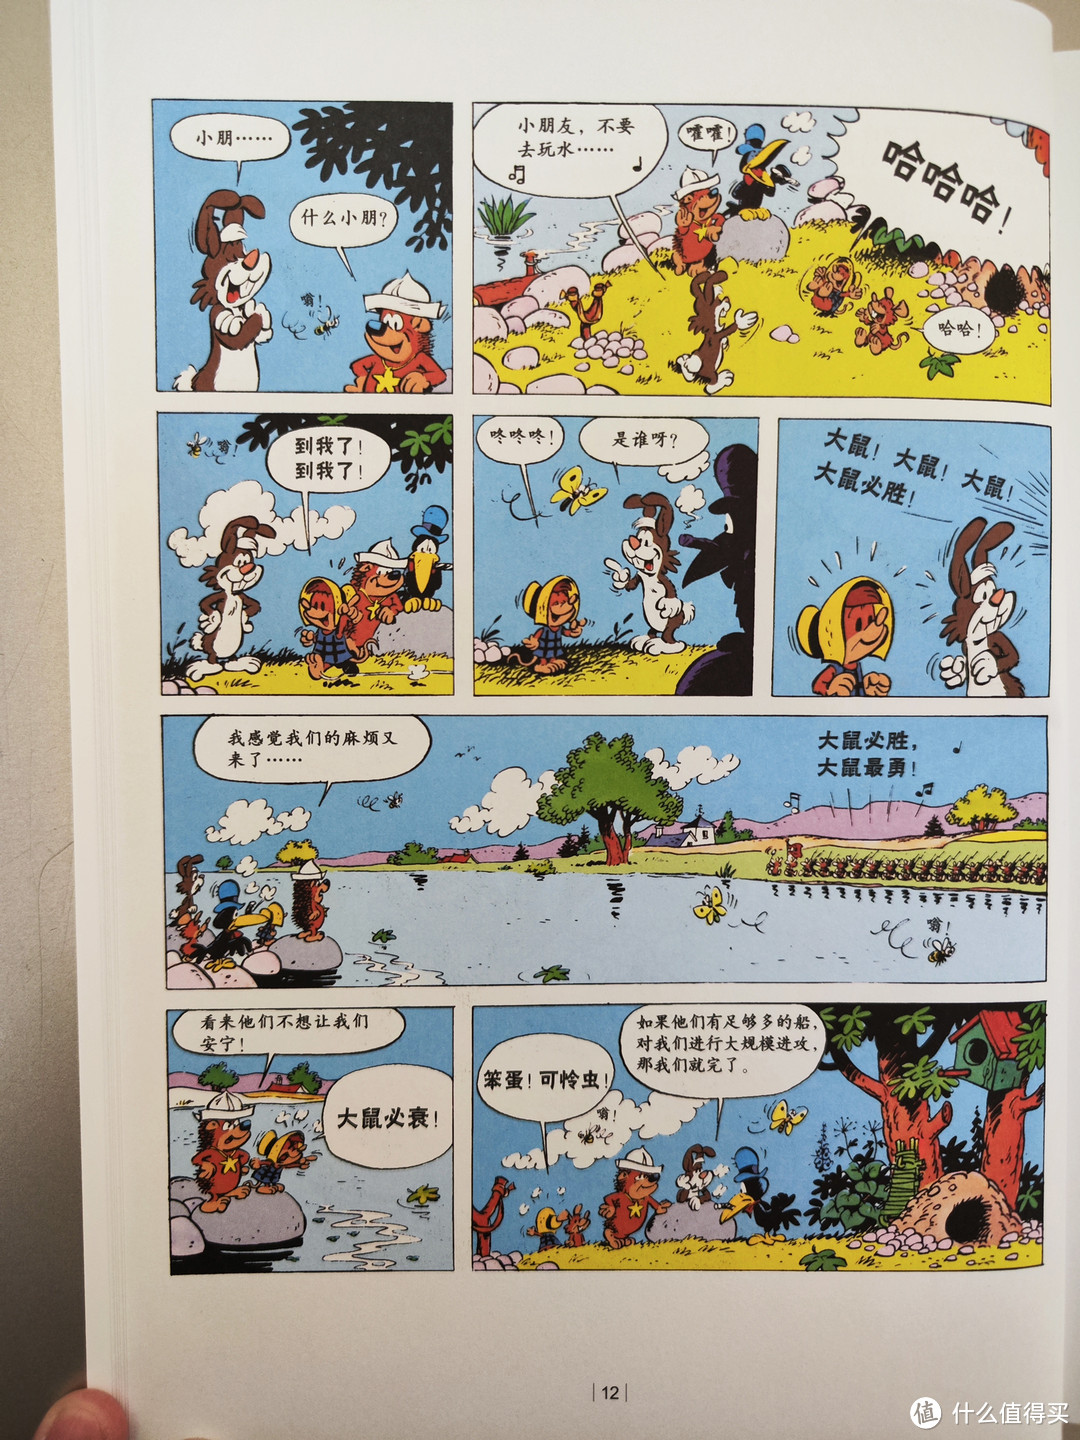 中国少年儿童出版社《小老鼠西比琳》小晒